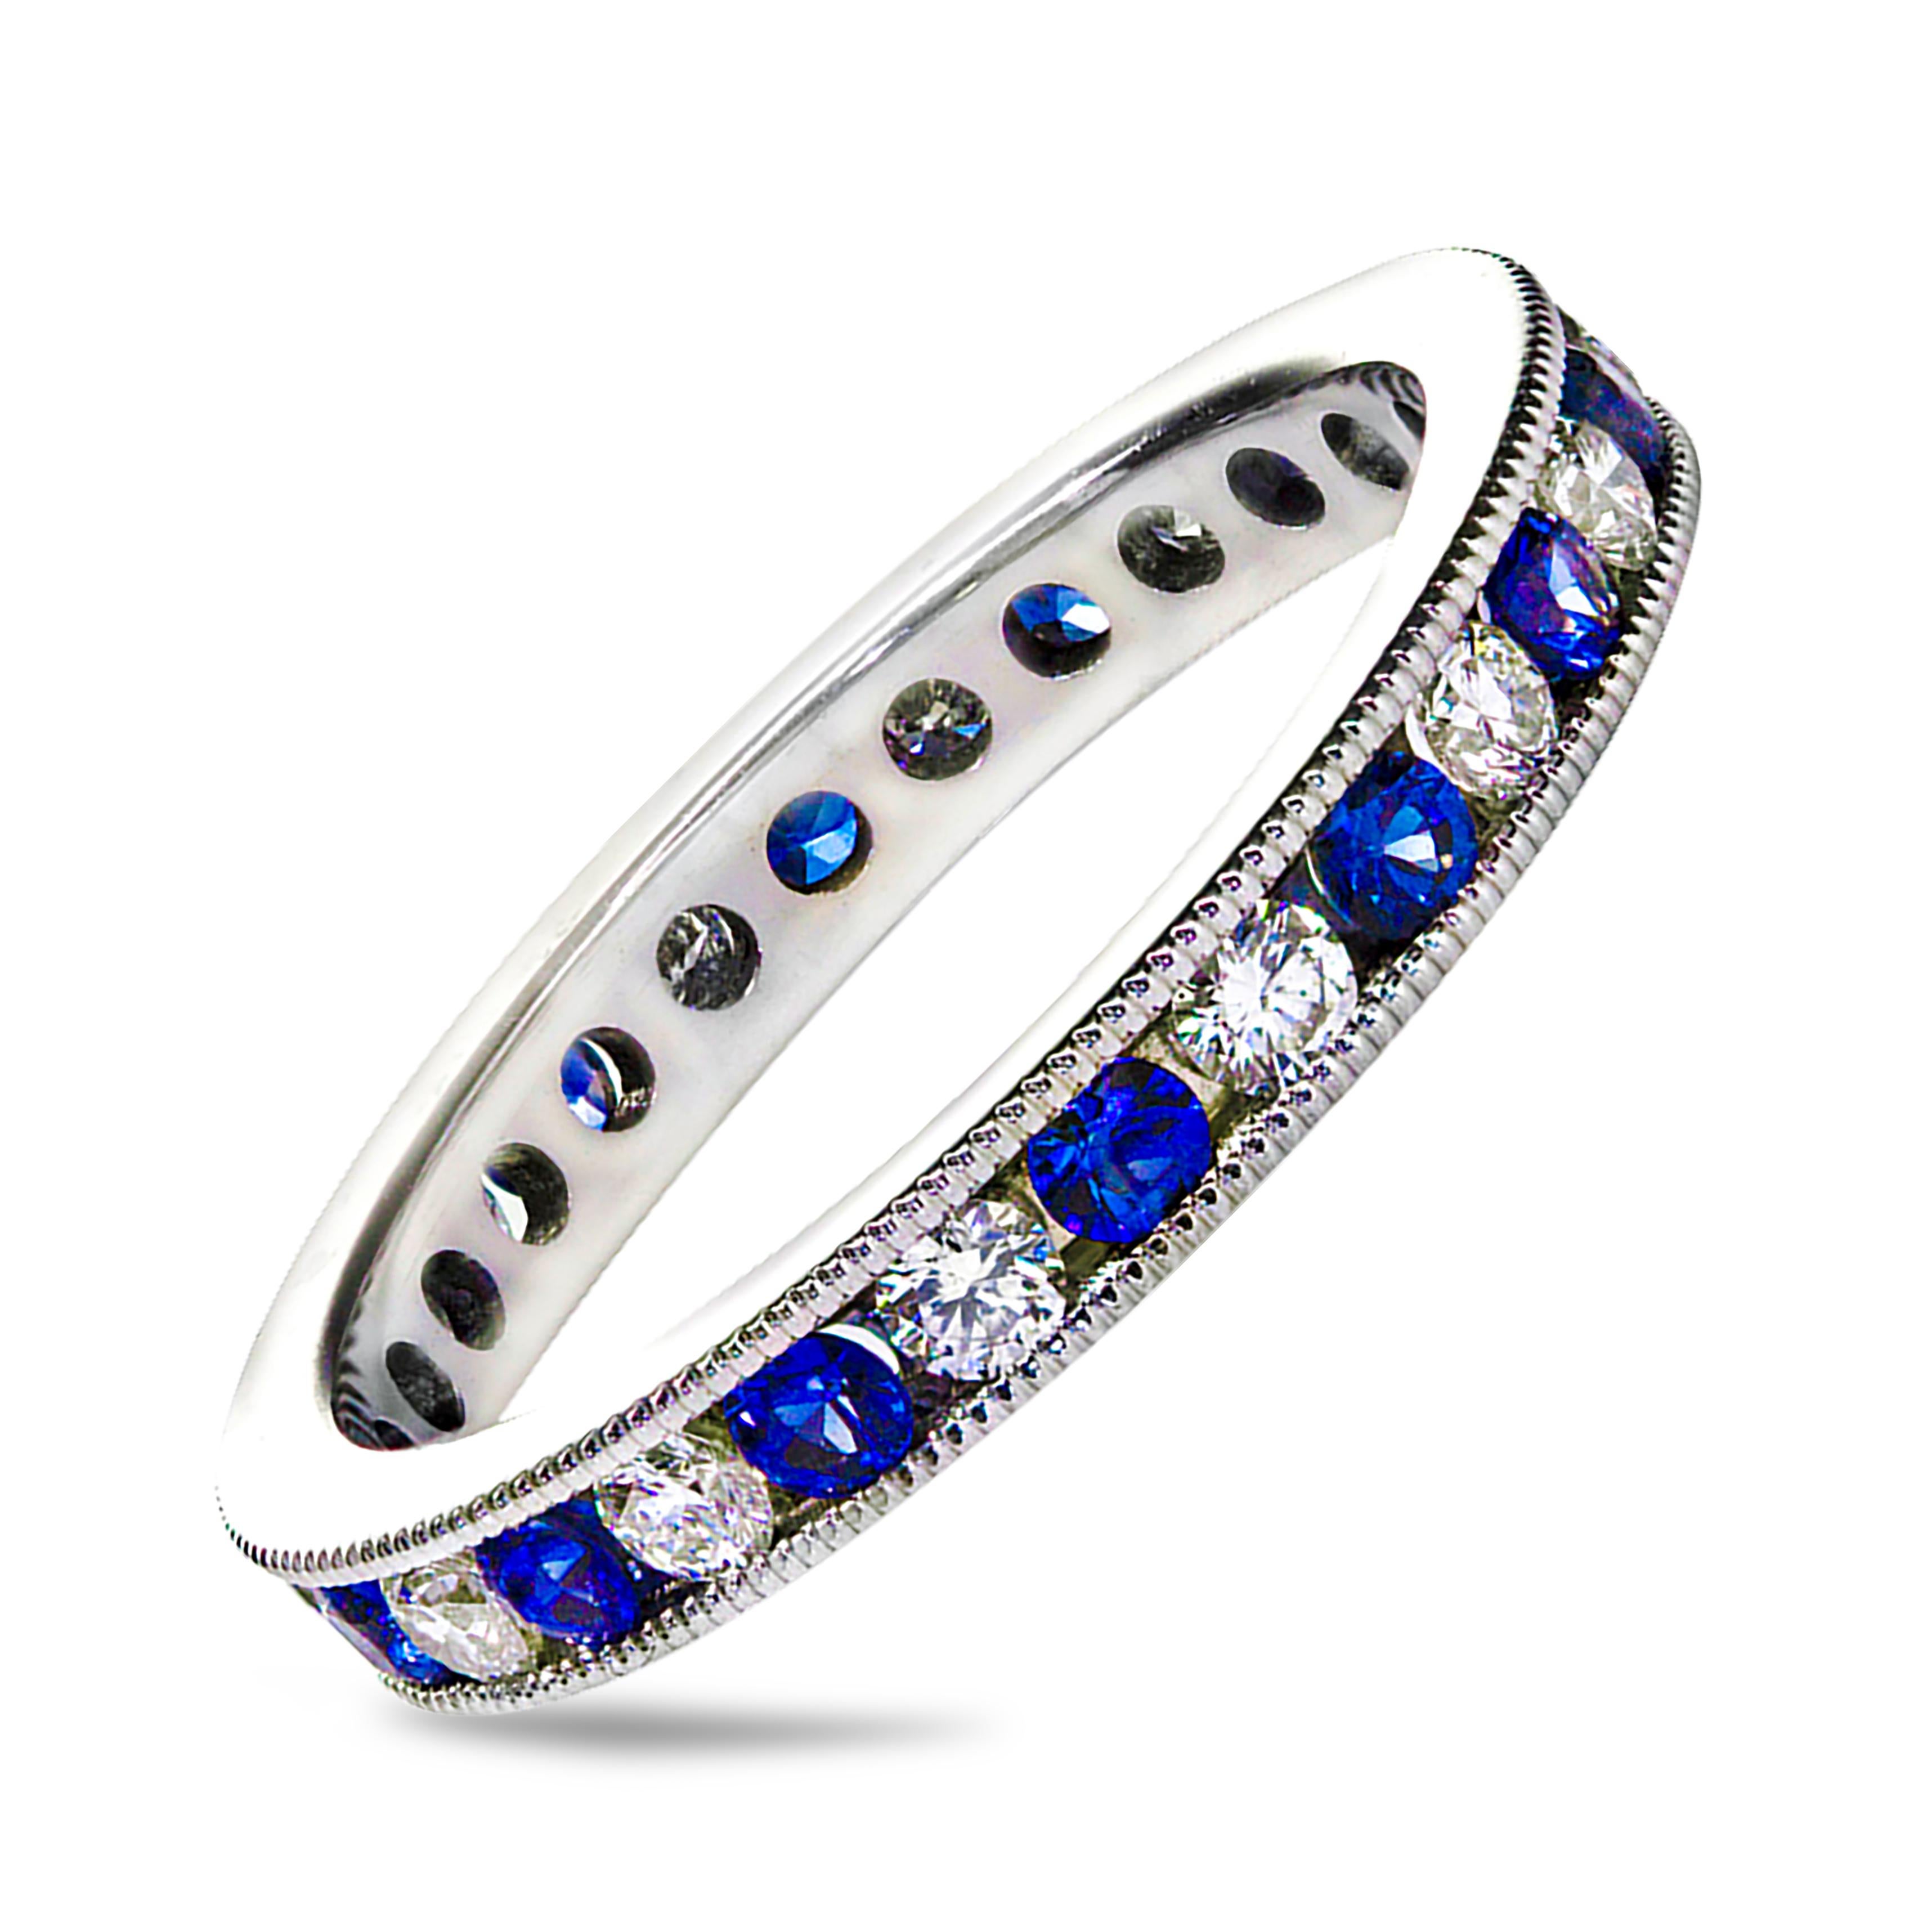 Ein gut gearbeiteter Ehering mit blauen Saphiren im Rundschliff mit einem Gewicht von 0,62 Karat, die sich mit runden weißen Diamanten von 0,50 Karat abwechseln. Die Steine wiegen insgesamt 1,12 Karat. Die Rillen sind gefasst und mit komplizierter